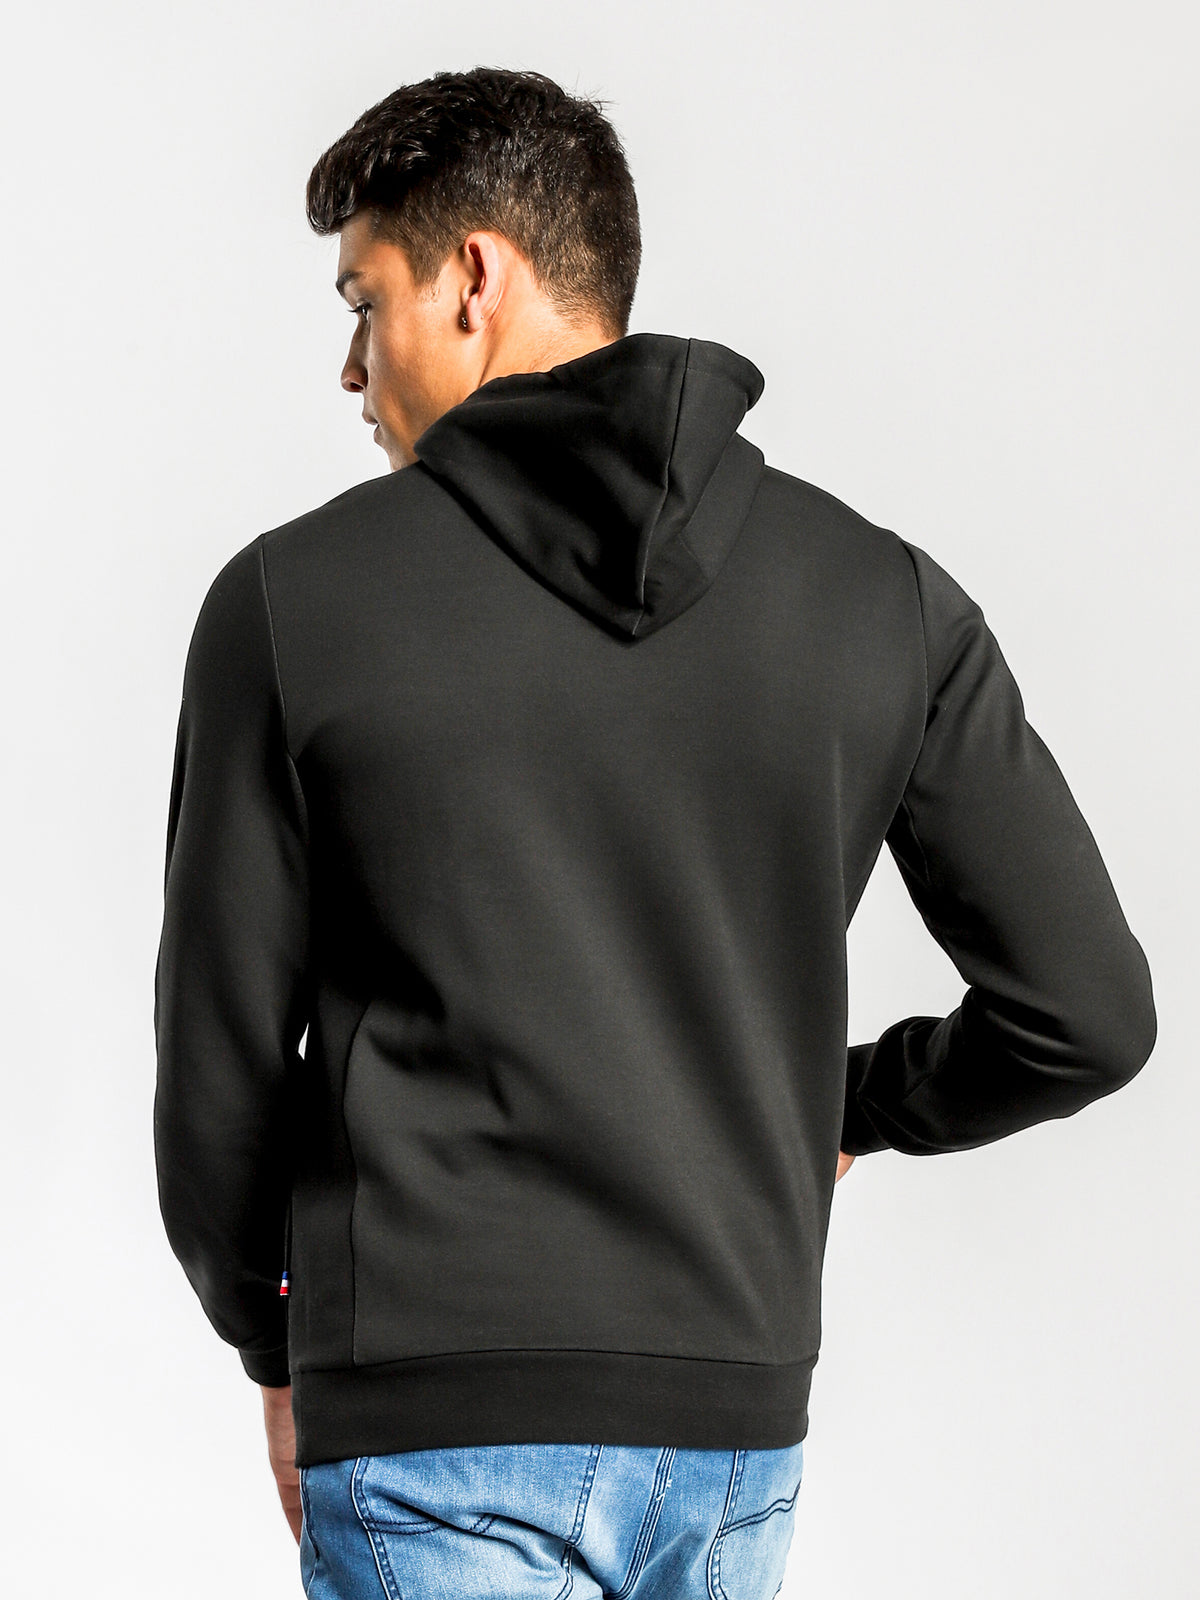 Essentiel Hooded Sweater in Black